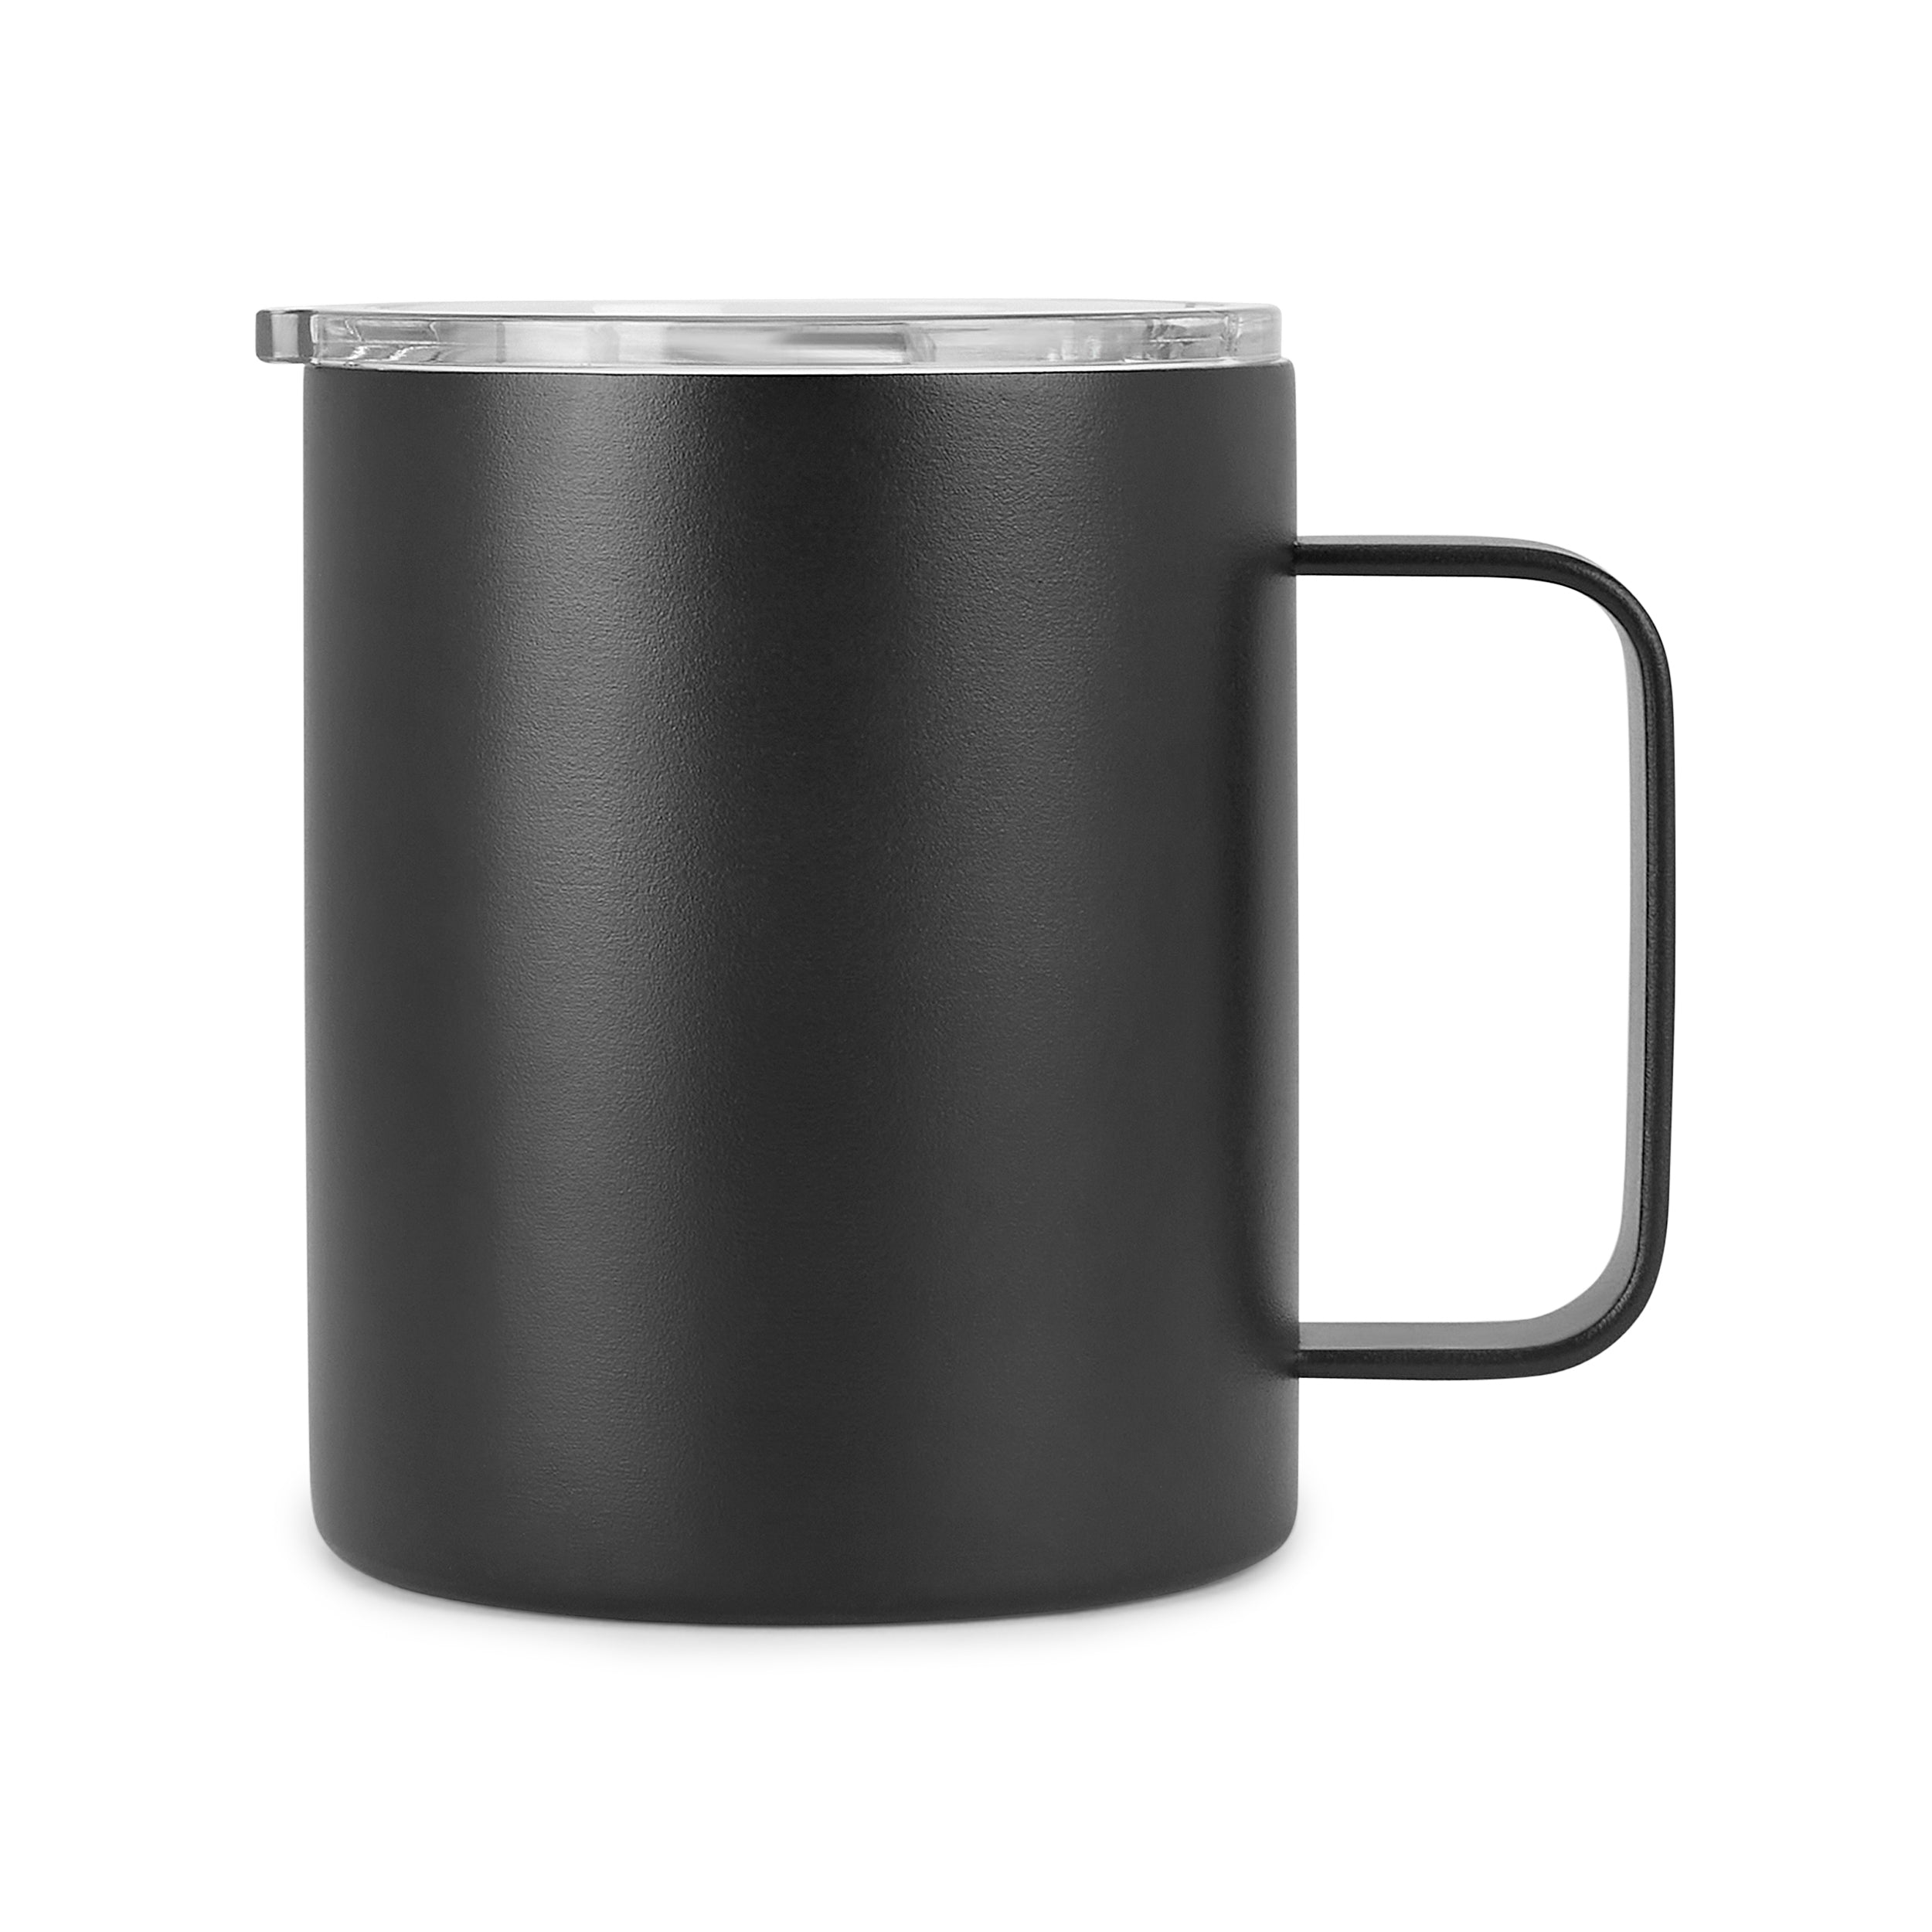 12oz Coffee Mug For Football